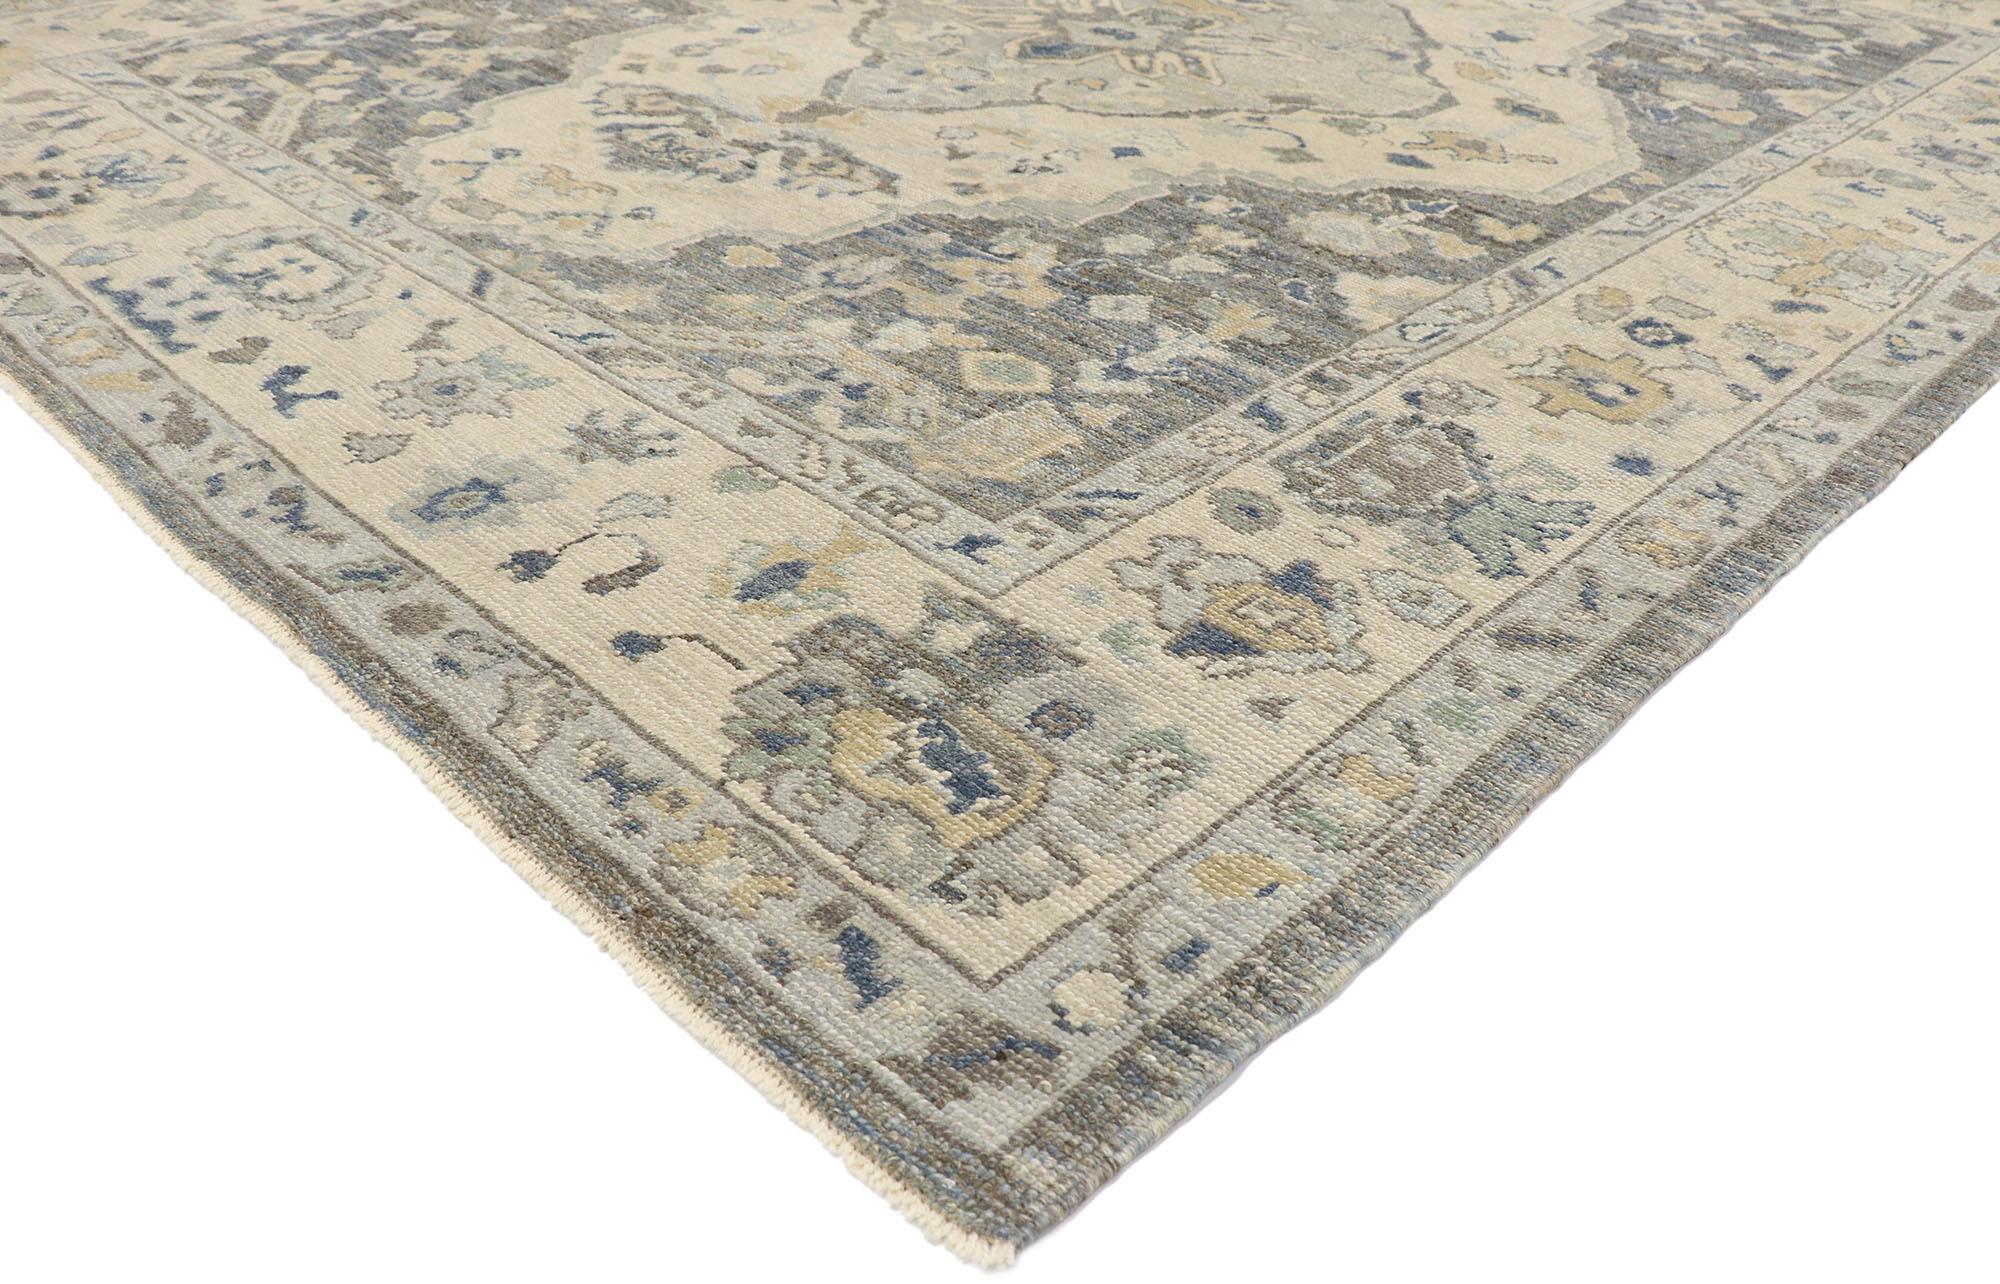 53556, nouveau tapis contemporain turc Oushak au style moderne et côtier. Ce tapis turc contemporain Oushak, en laine nouée à la main, présente un motif floral sur toute sa surface, réparti sur un champ abrasé. Un ensemble de motifs botaniques